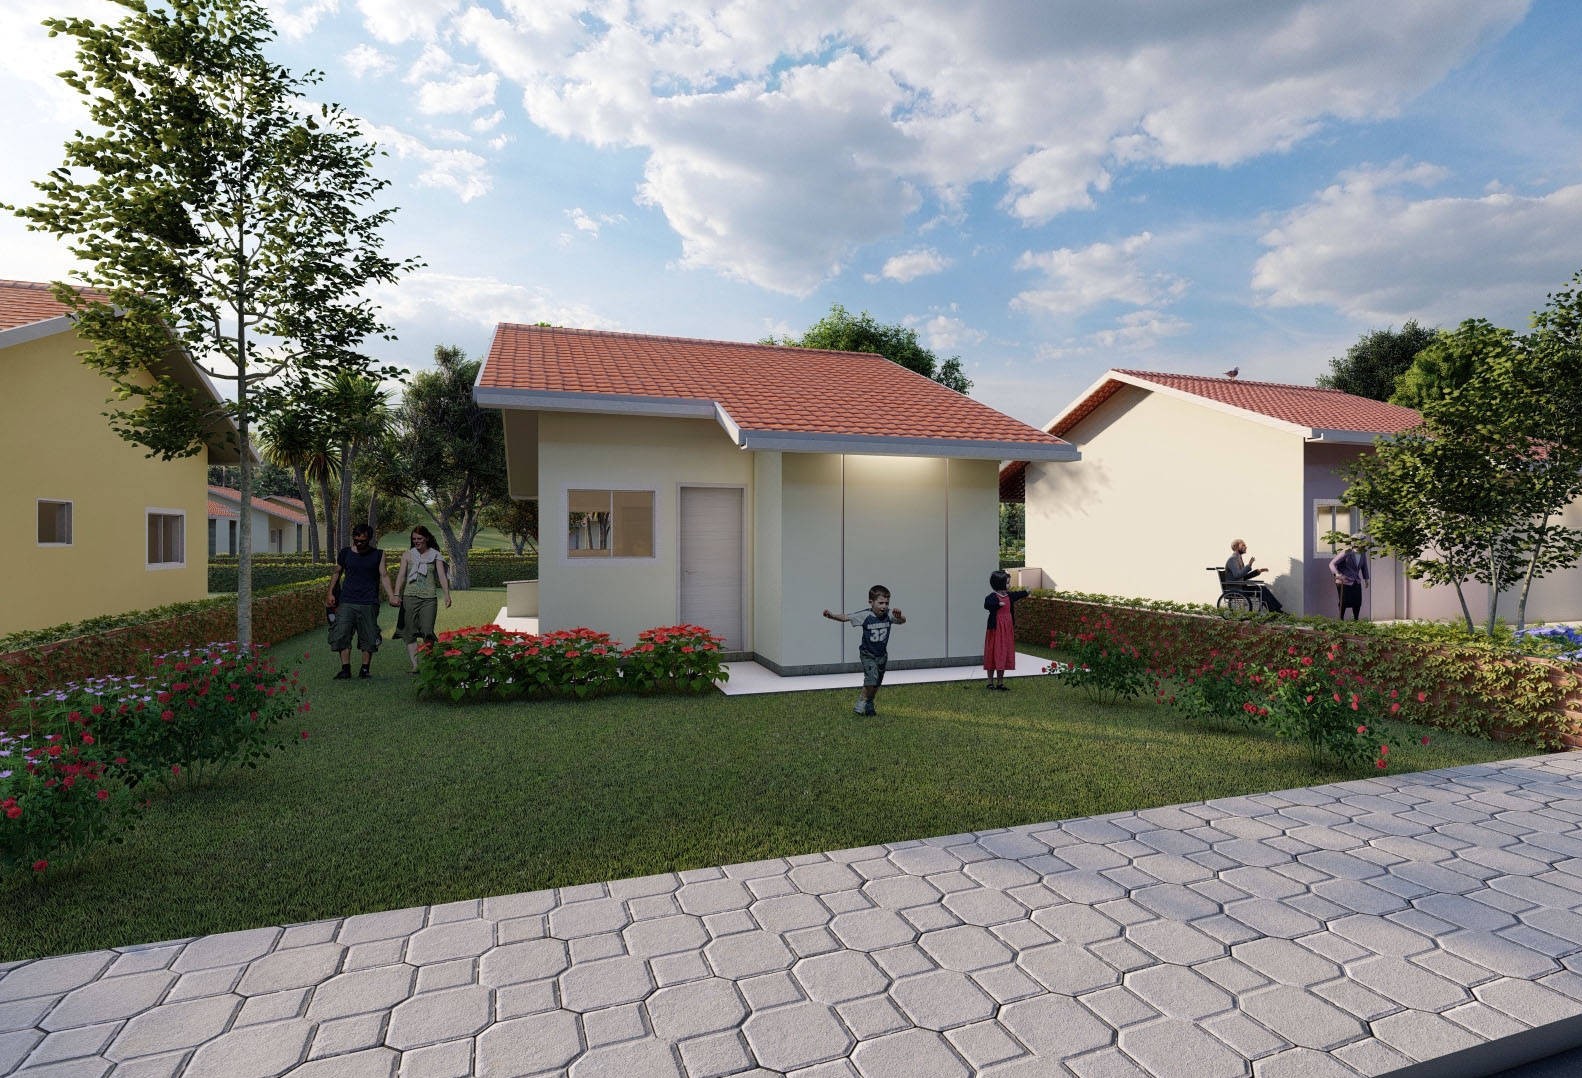 AEAC e prefeitura de Cascavel oferecem projetos gratuitos para construção de moradias populares